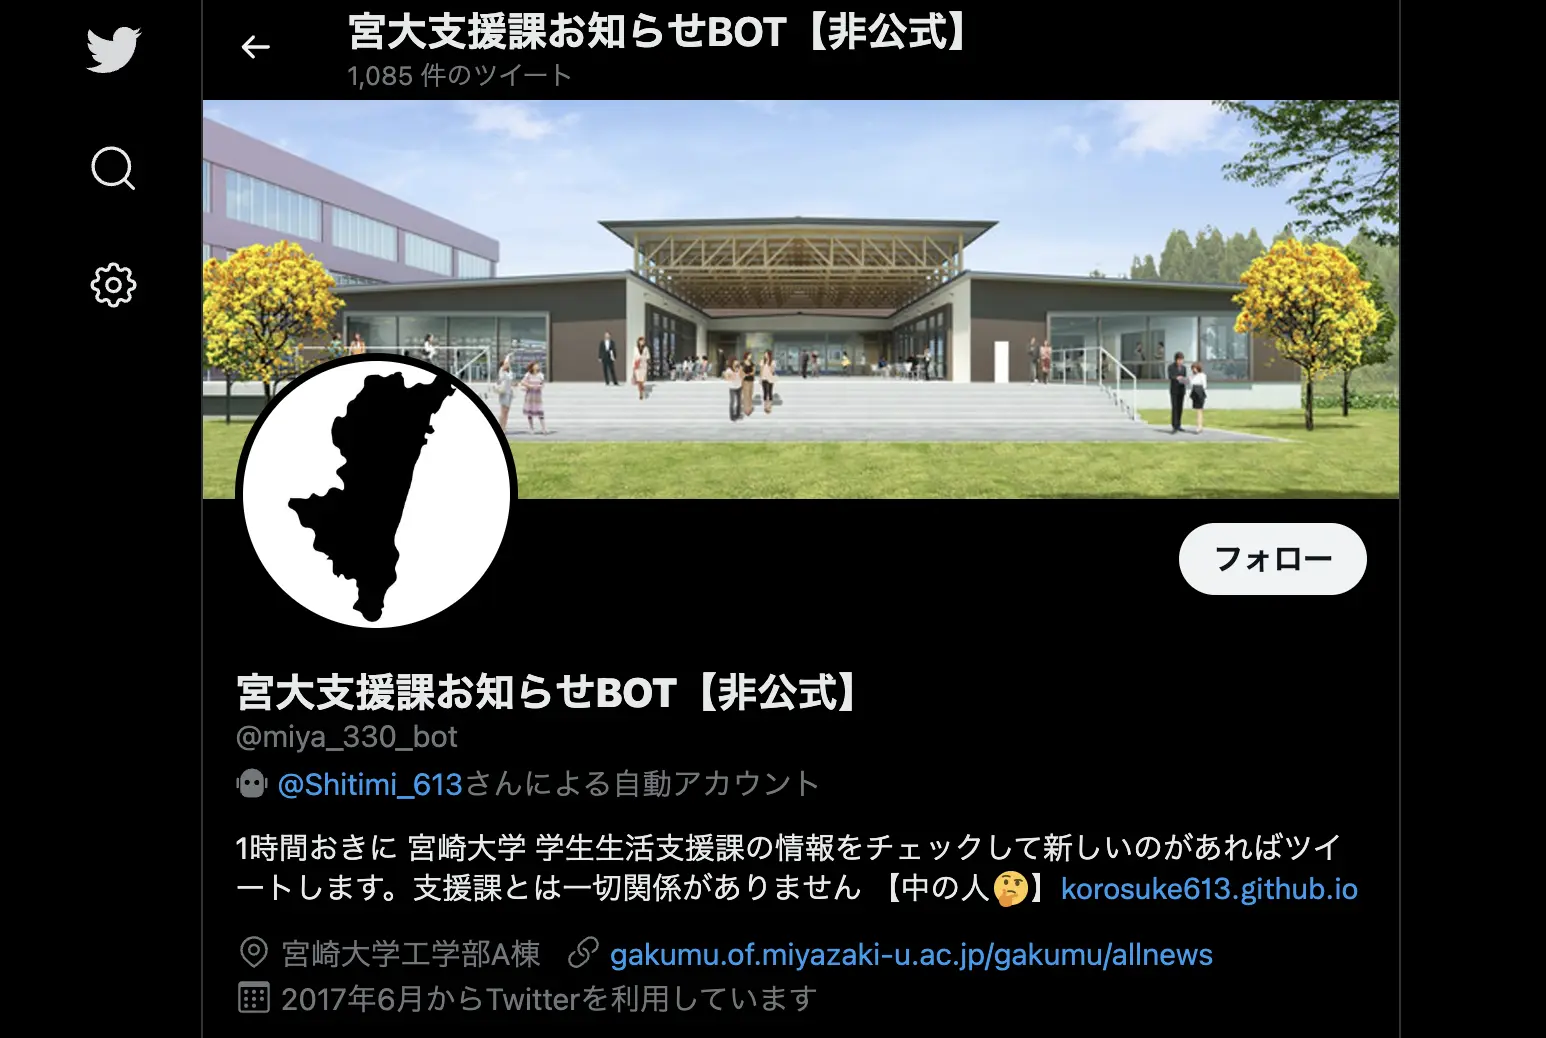 宮大支援課お知らせBOT【非公式】のTwitterページ